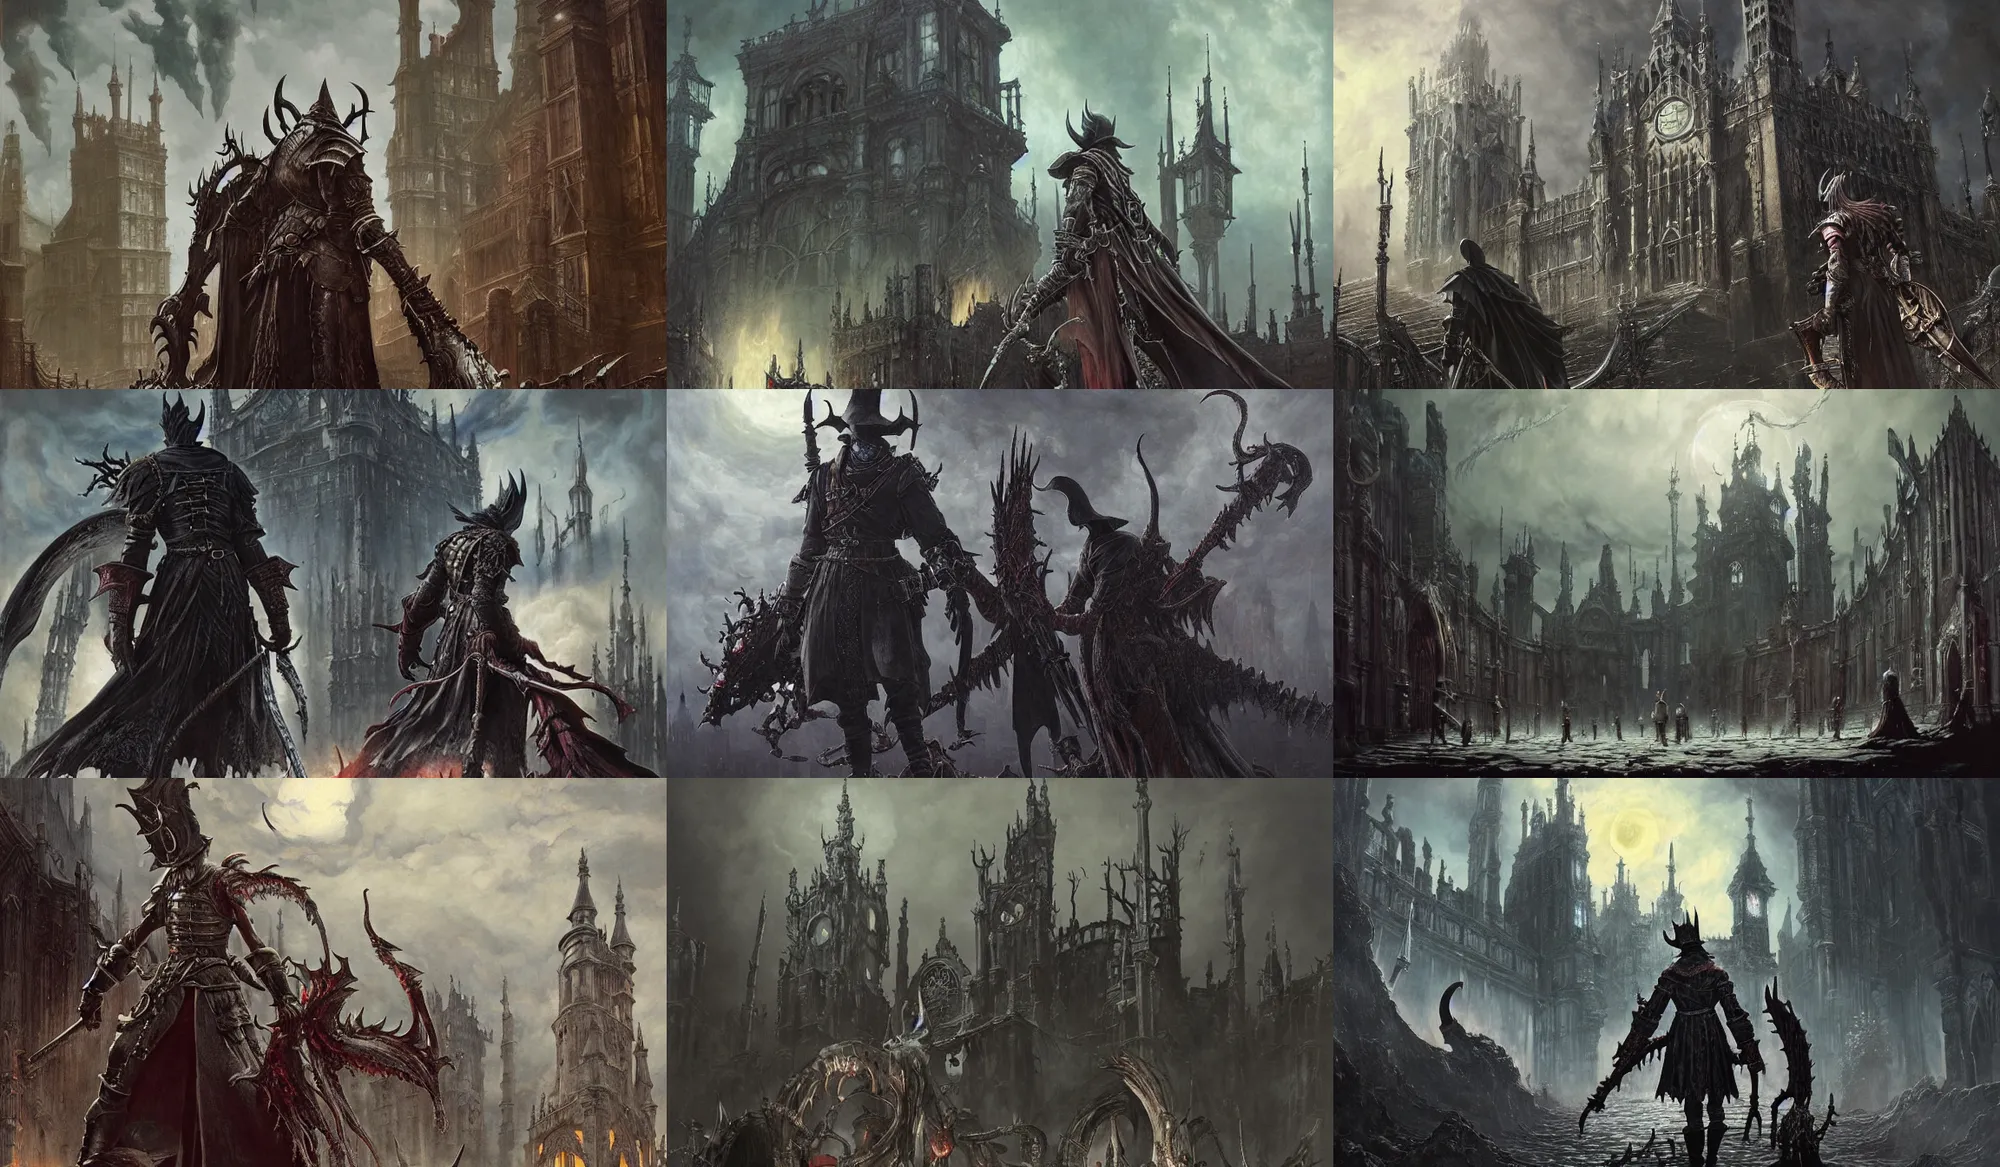 Prompt: painting by studio ghibli and henryk siemiradzki and gred hildebrandt, gothic dark fantasy bloodborne, epic multifigures composition